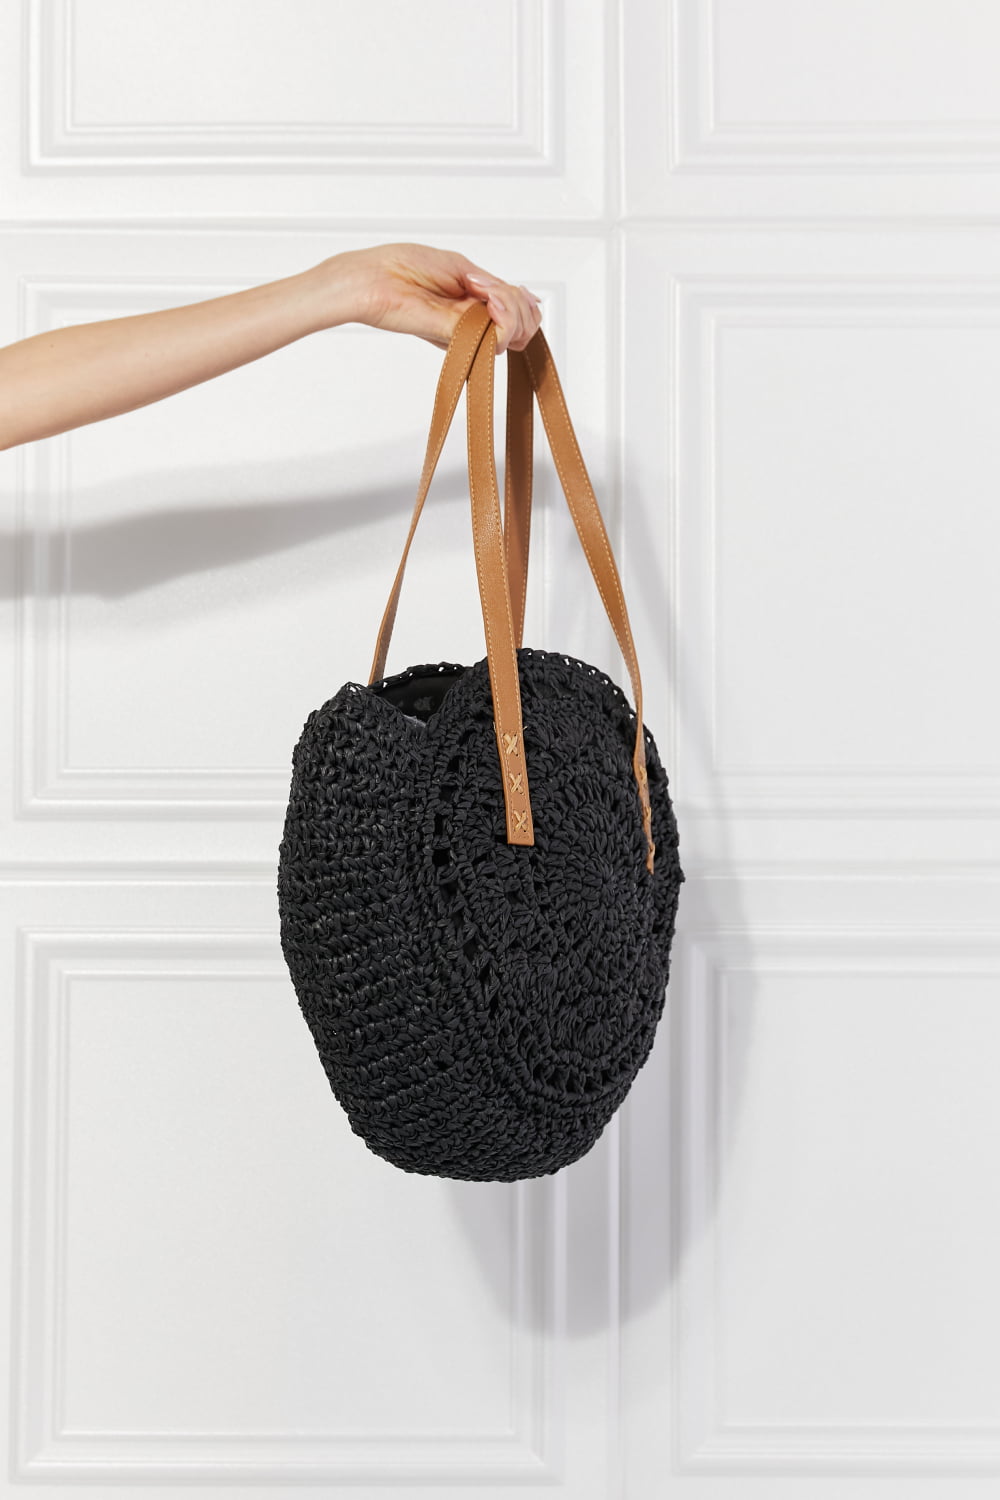 Justin Taylor C'est La Vie Crochet Handbag in Black - nailedmoms